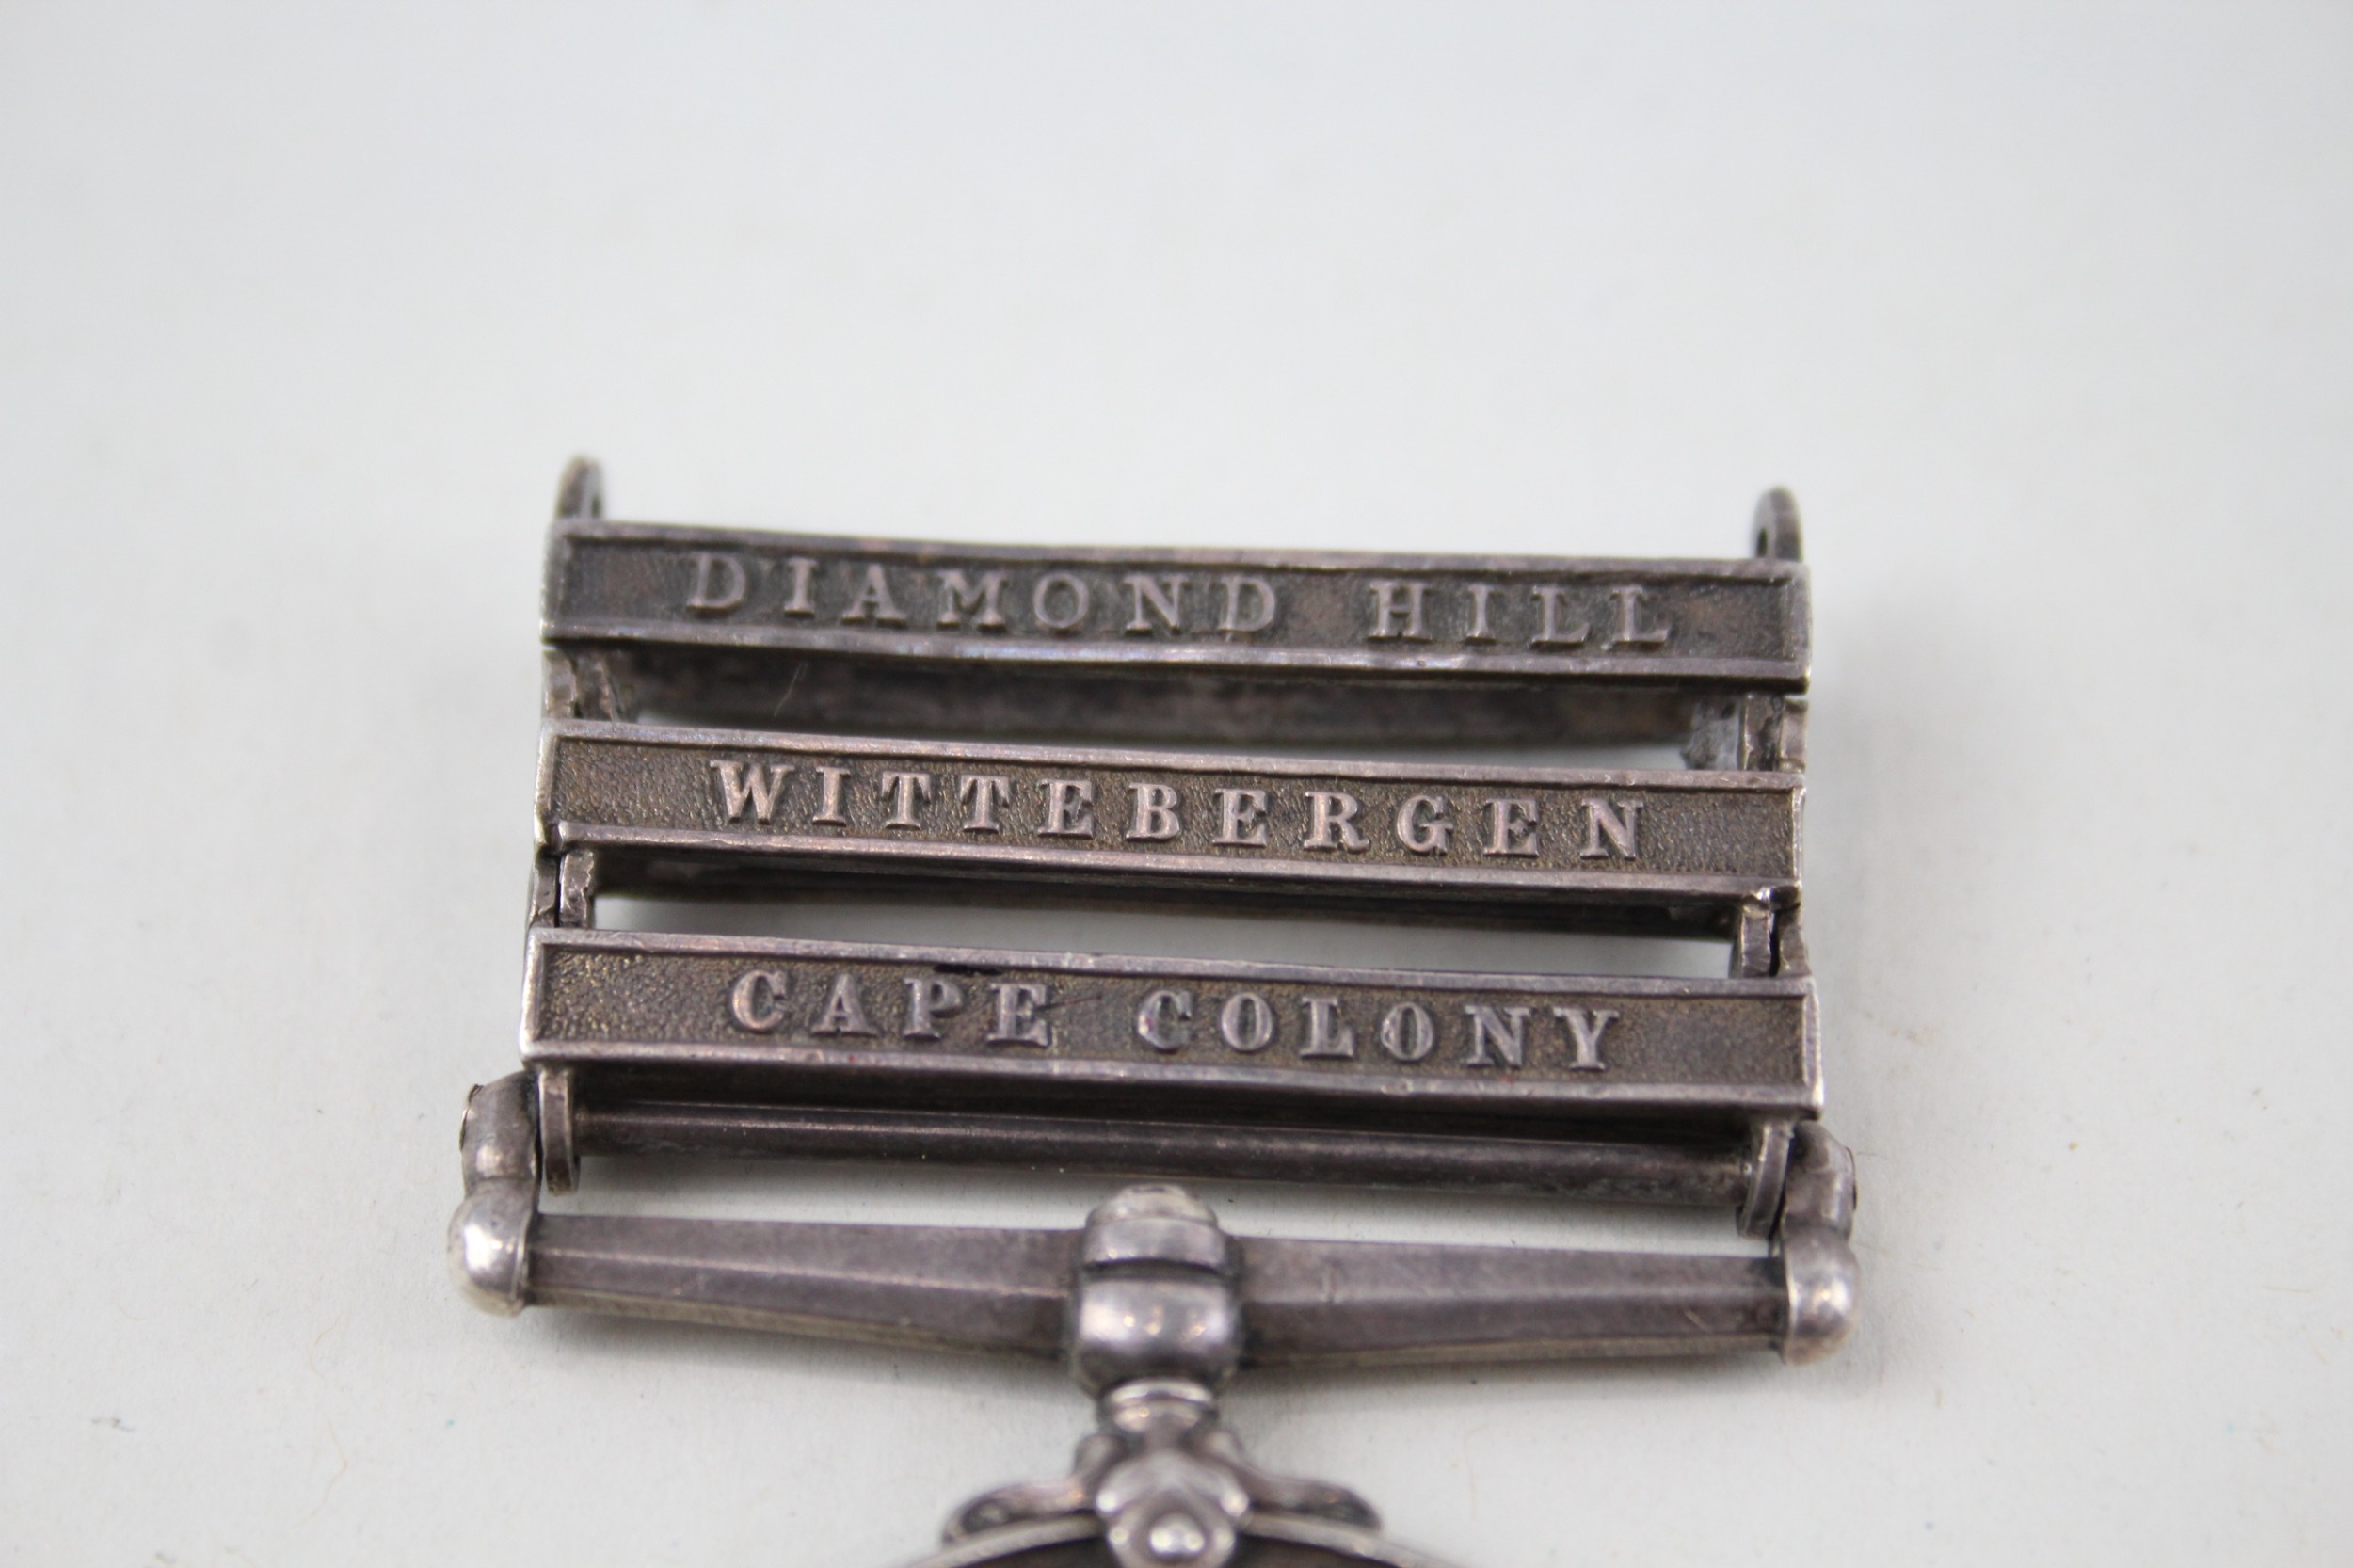 Boer War Queens South Africa Medal Named 2908 C. Windsor - Image 2 of 6